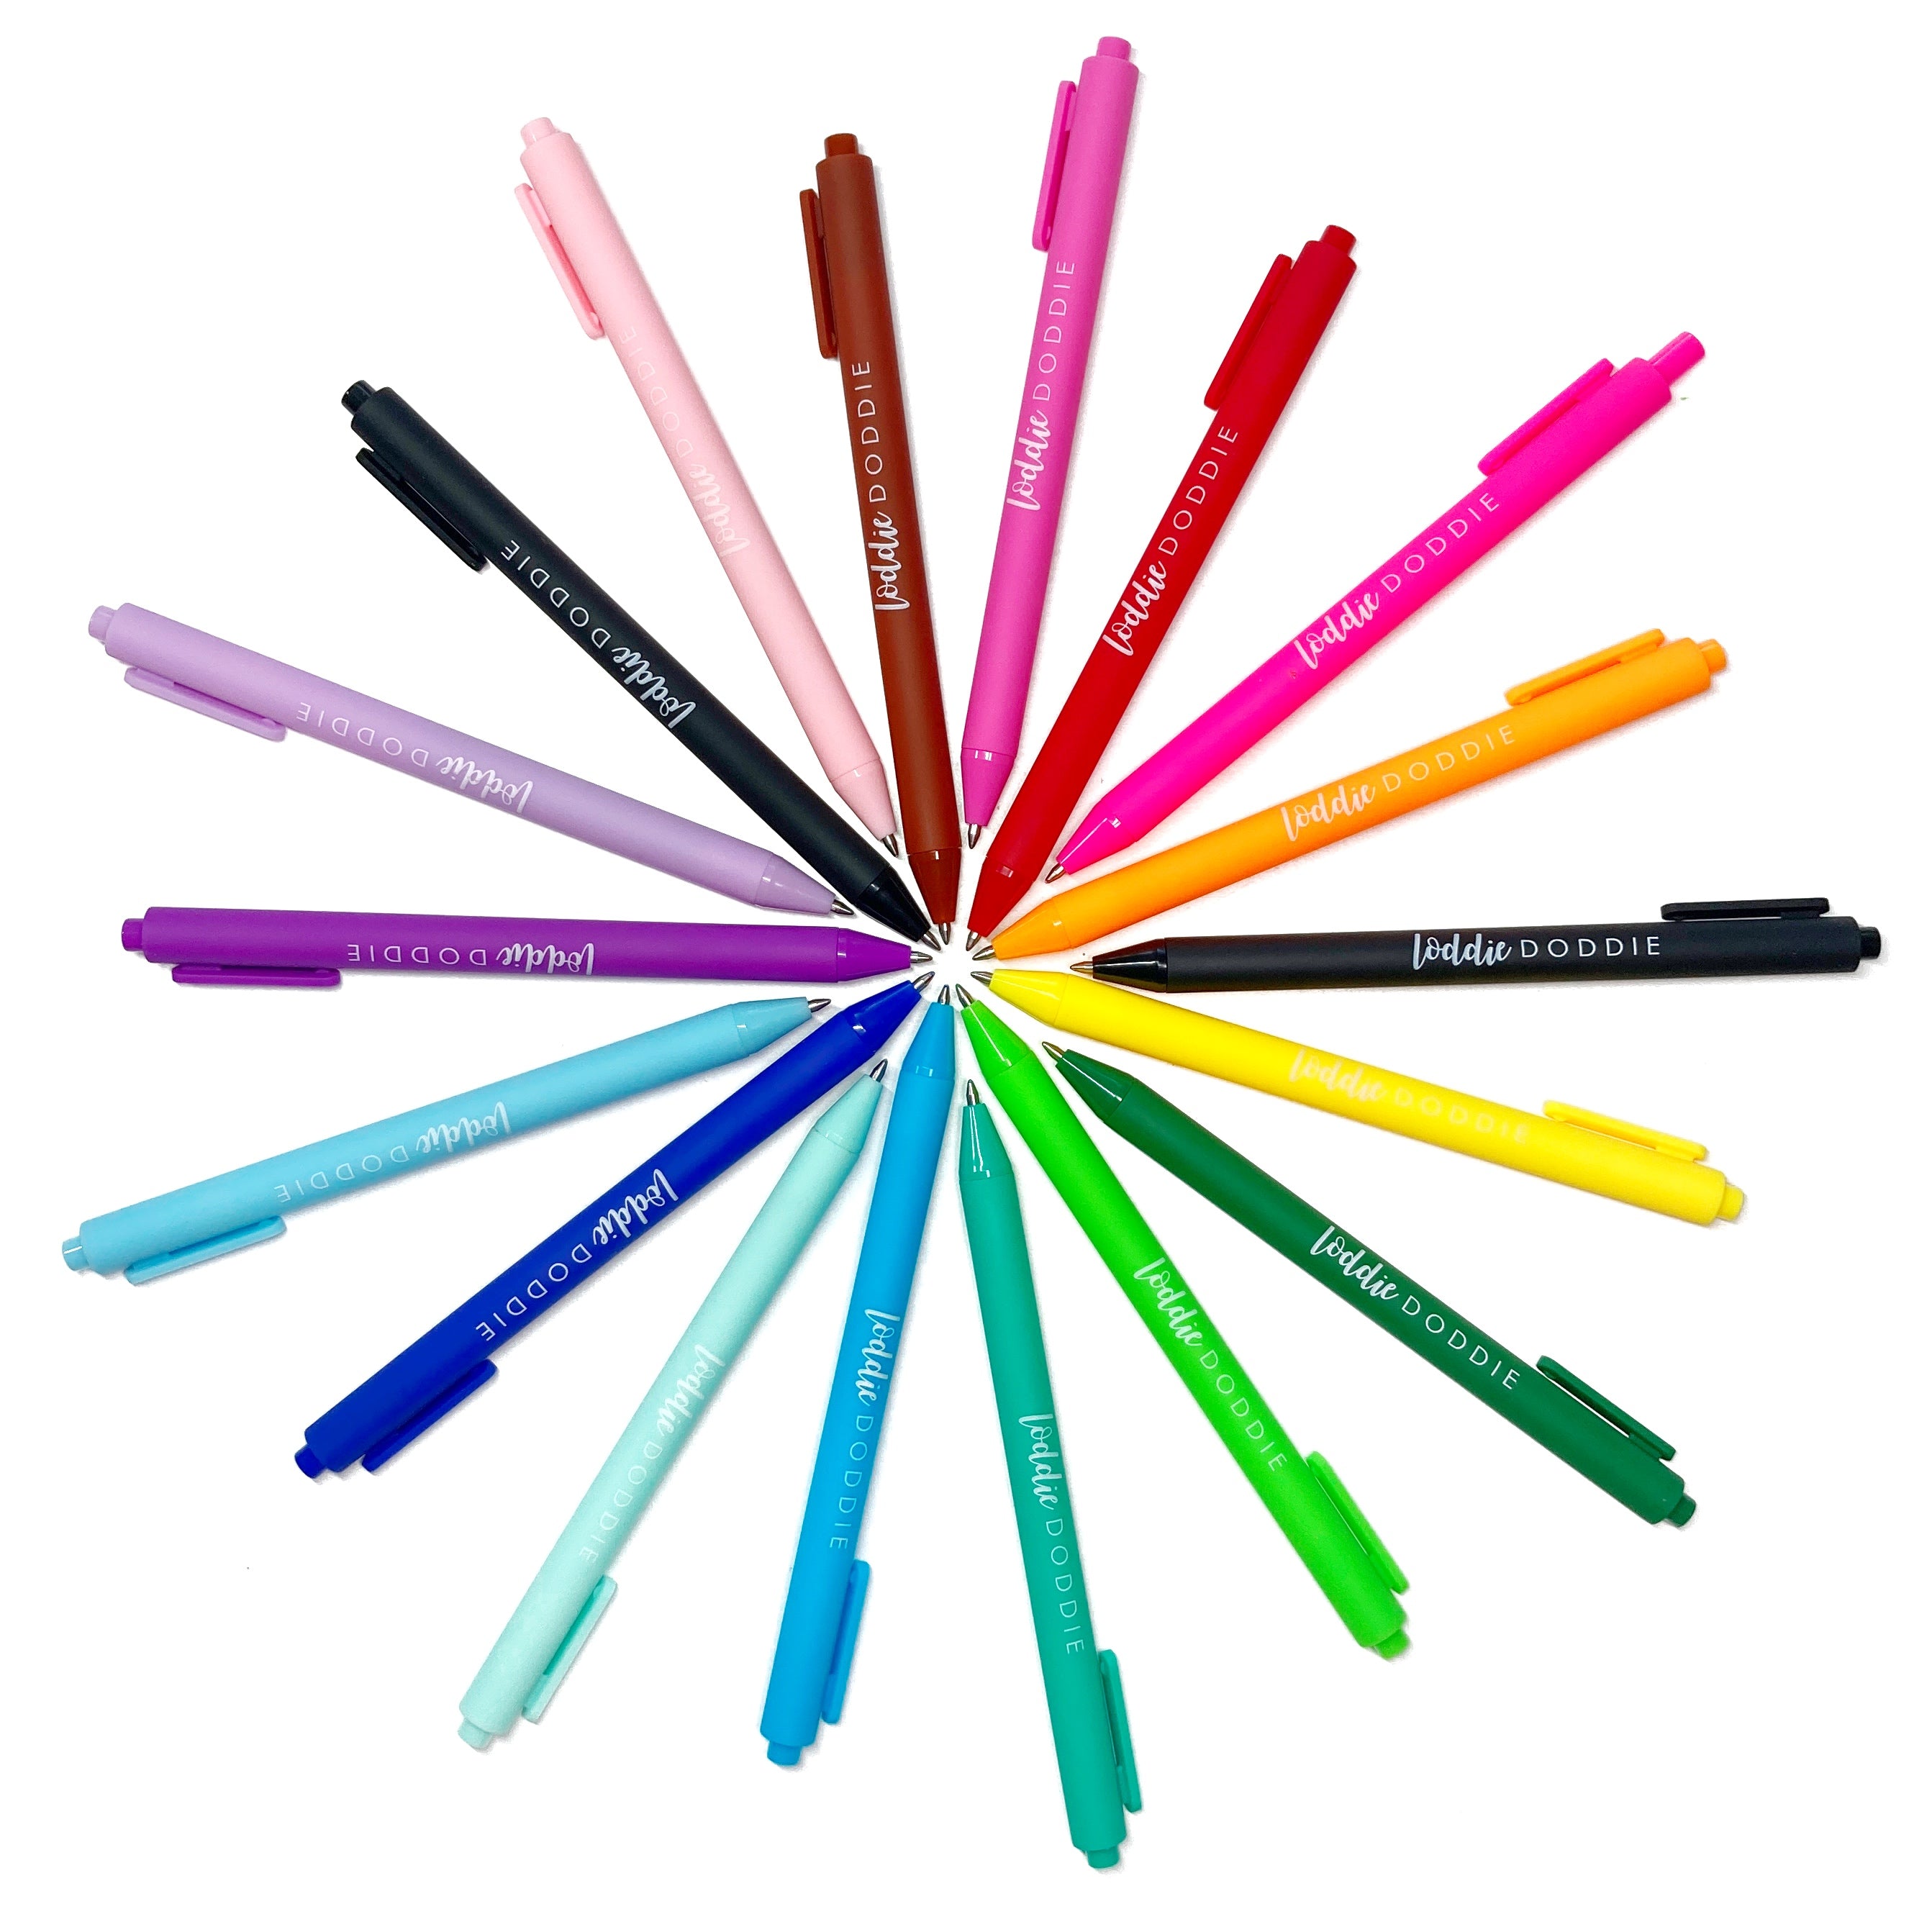 Loddie Doddie RNAB0B627WQF3 loddie doddie colored gel pens for note taking,  ballpoint ink gel pens with 1mm tip, 24-pack colored pens in 6 neon,  metallic